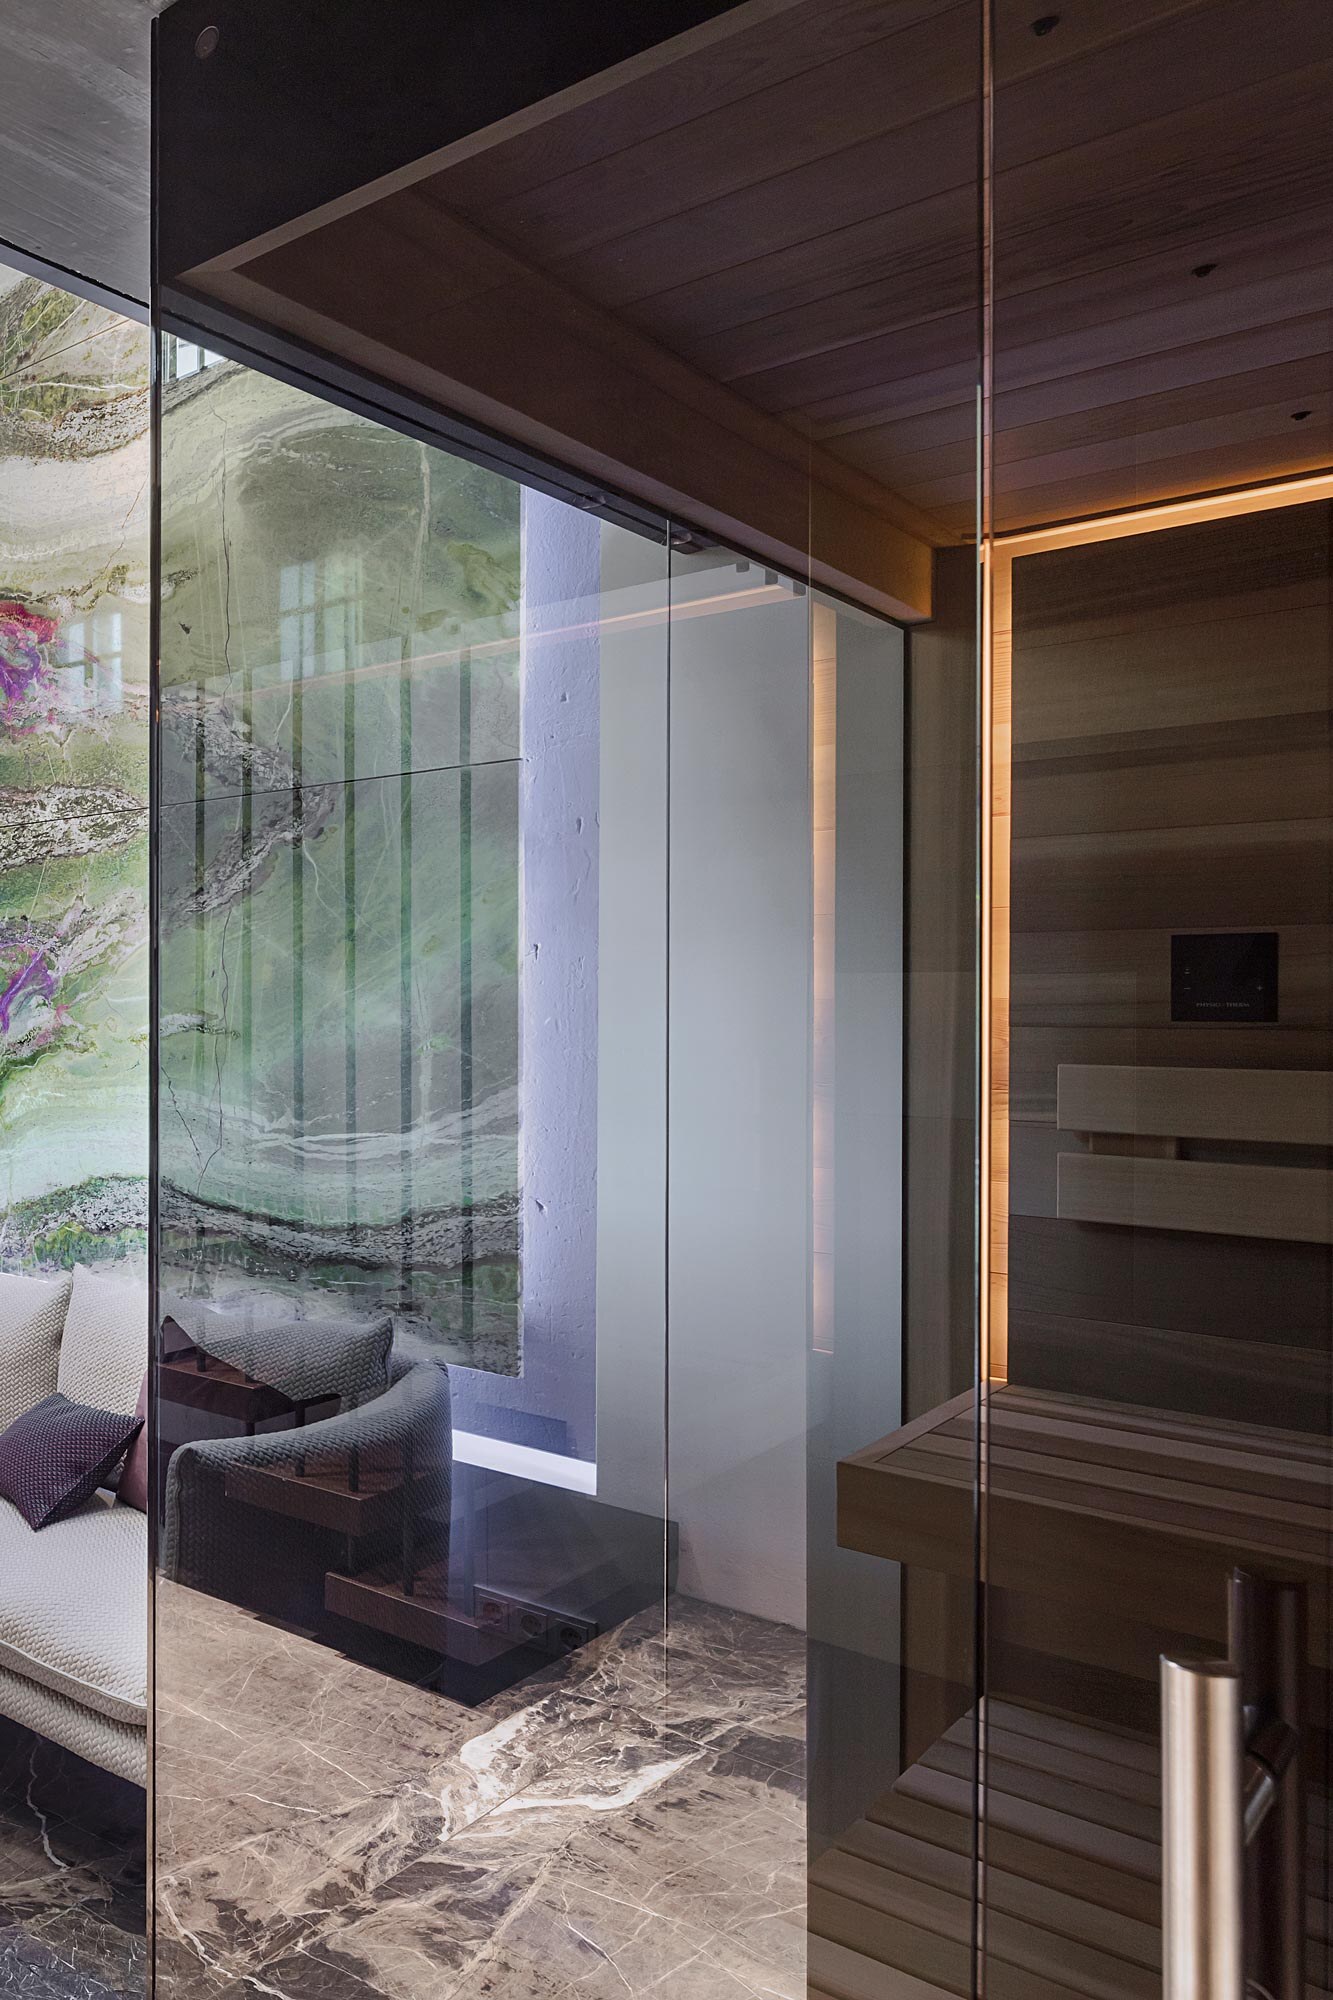 Moderne Infrarot-Sauna von Deisl aus massivem Zedernholz mit schwarz getoenter Uebereckverglasung und Stimmungslicht, passend fuer ein luxurioese Private-Spa.